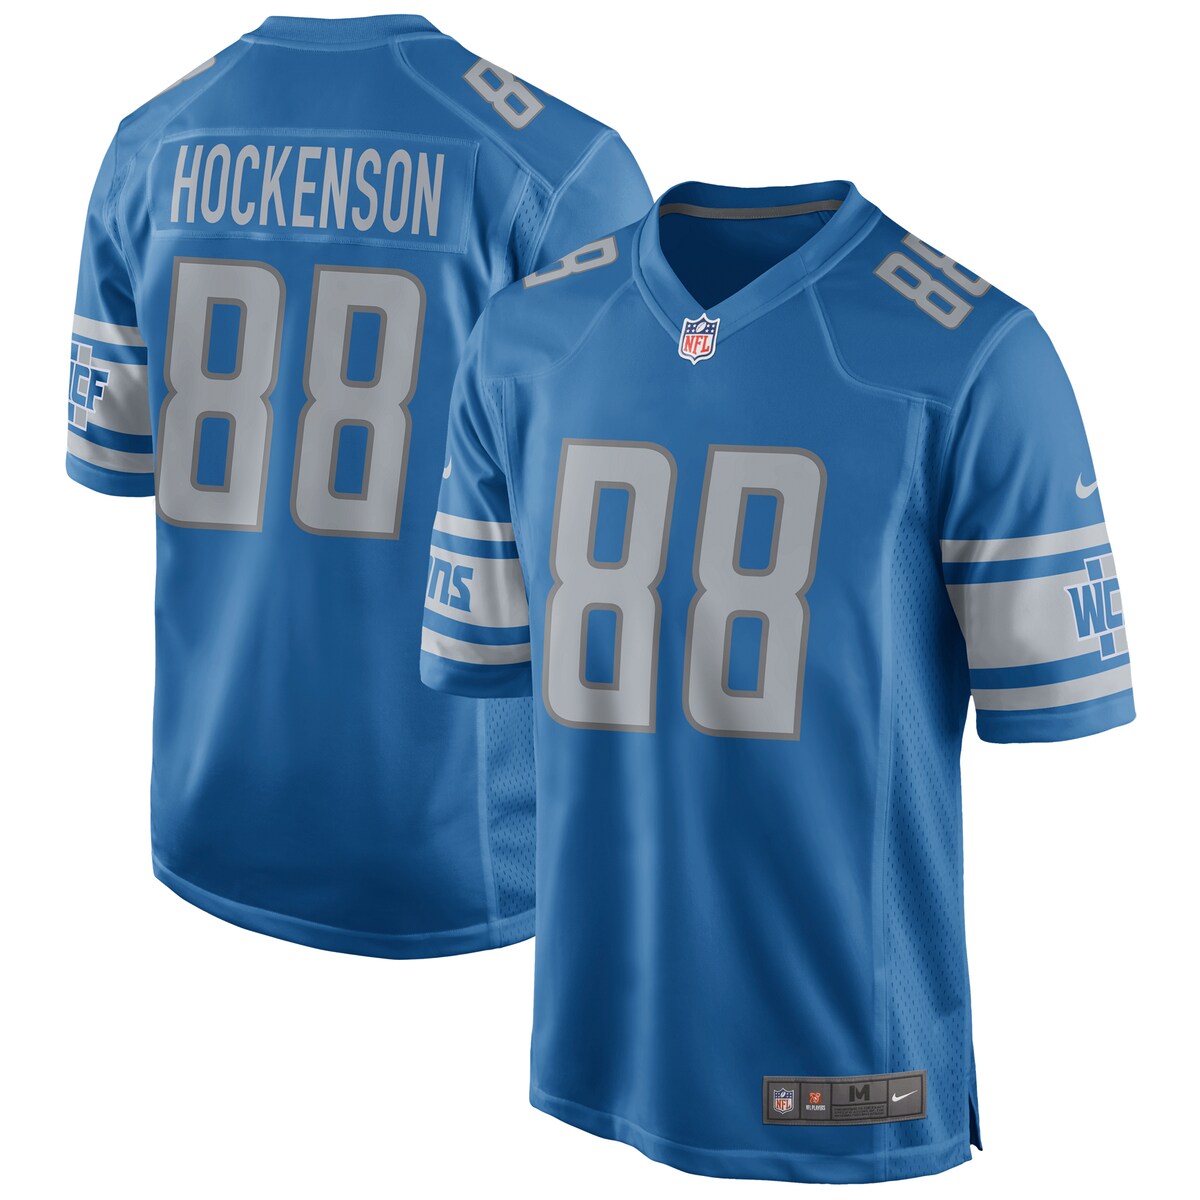 NFL ライオンズ T.J.ホッケンソン ユニフォーム Nike ナイキ メンズ ブルー (Mens Nike Game NFL Jersey)